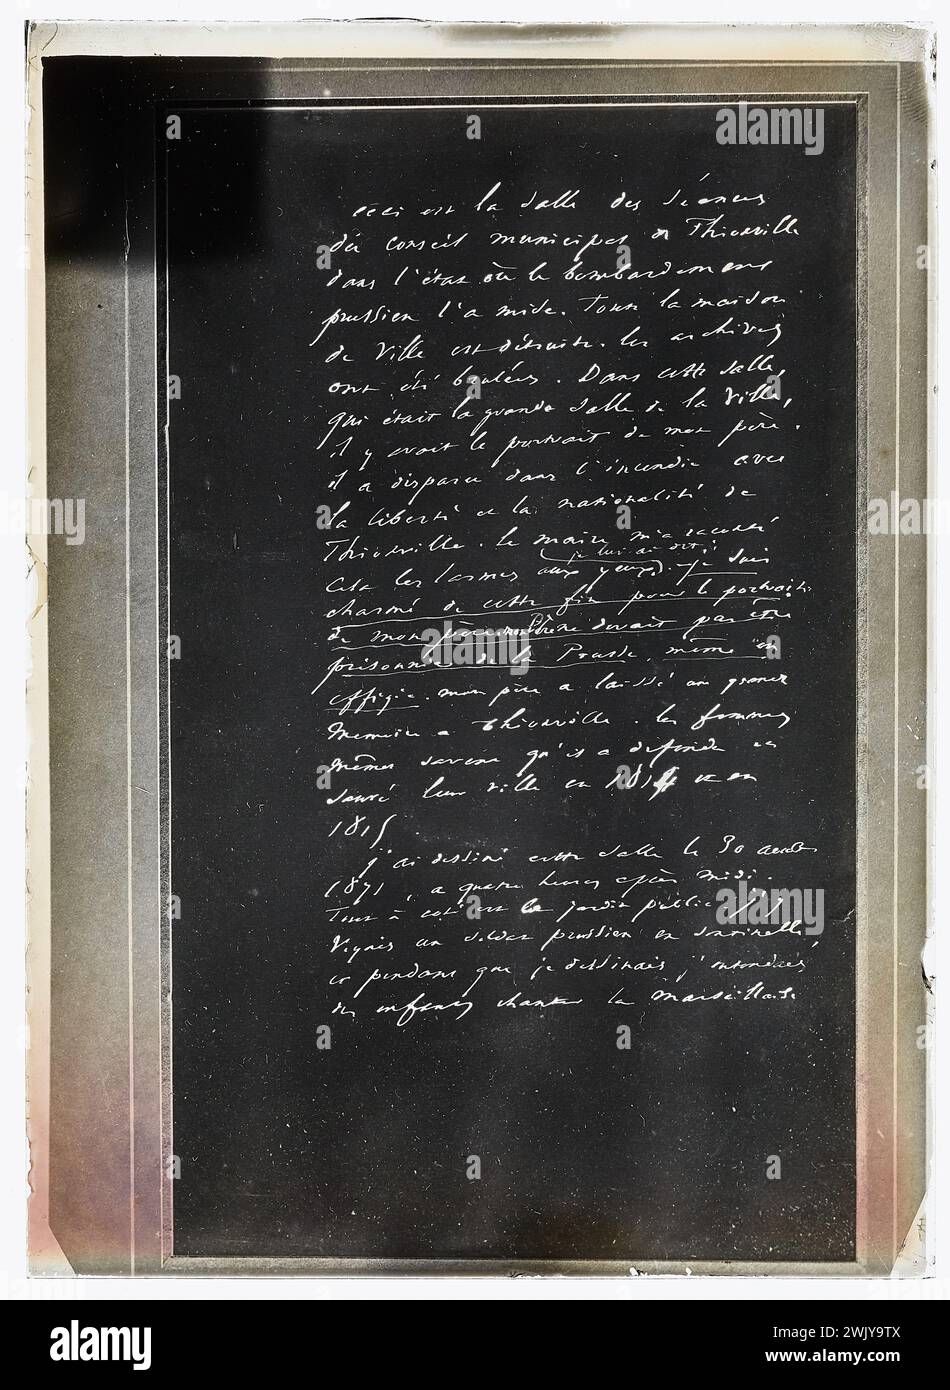 Anonimo, manoscritto che accompagna un disegno di Victor Hugo: Salle des sessions du council di Thionville, dopo l'entrata dei prussiani nel 1871 (titolo fittizio). Case di Victor Hugo Parigi - Guernsey. Foto Stock